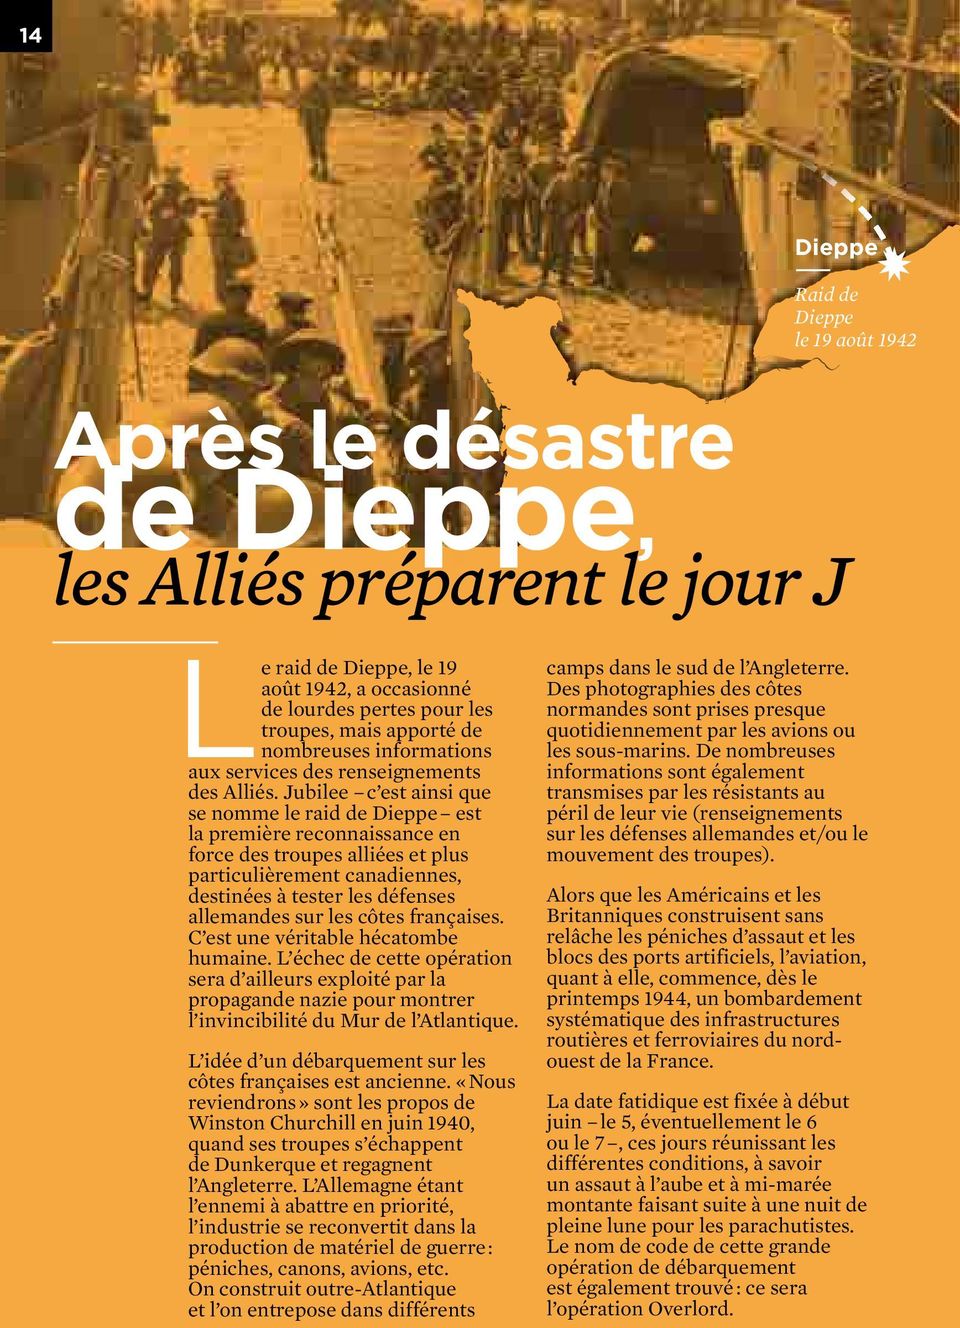 Jubilee c est ainsi que se nomme le raid de Dieppe est la première reconnaissance en force des troupes alliées et plus particulièrement canadiennes, destinées à tester les défenses allemandes sur les